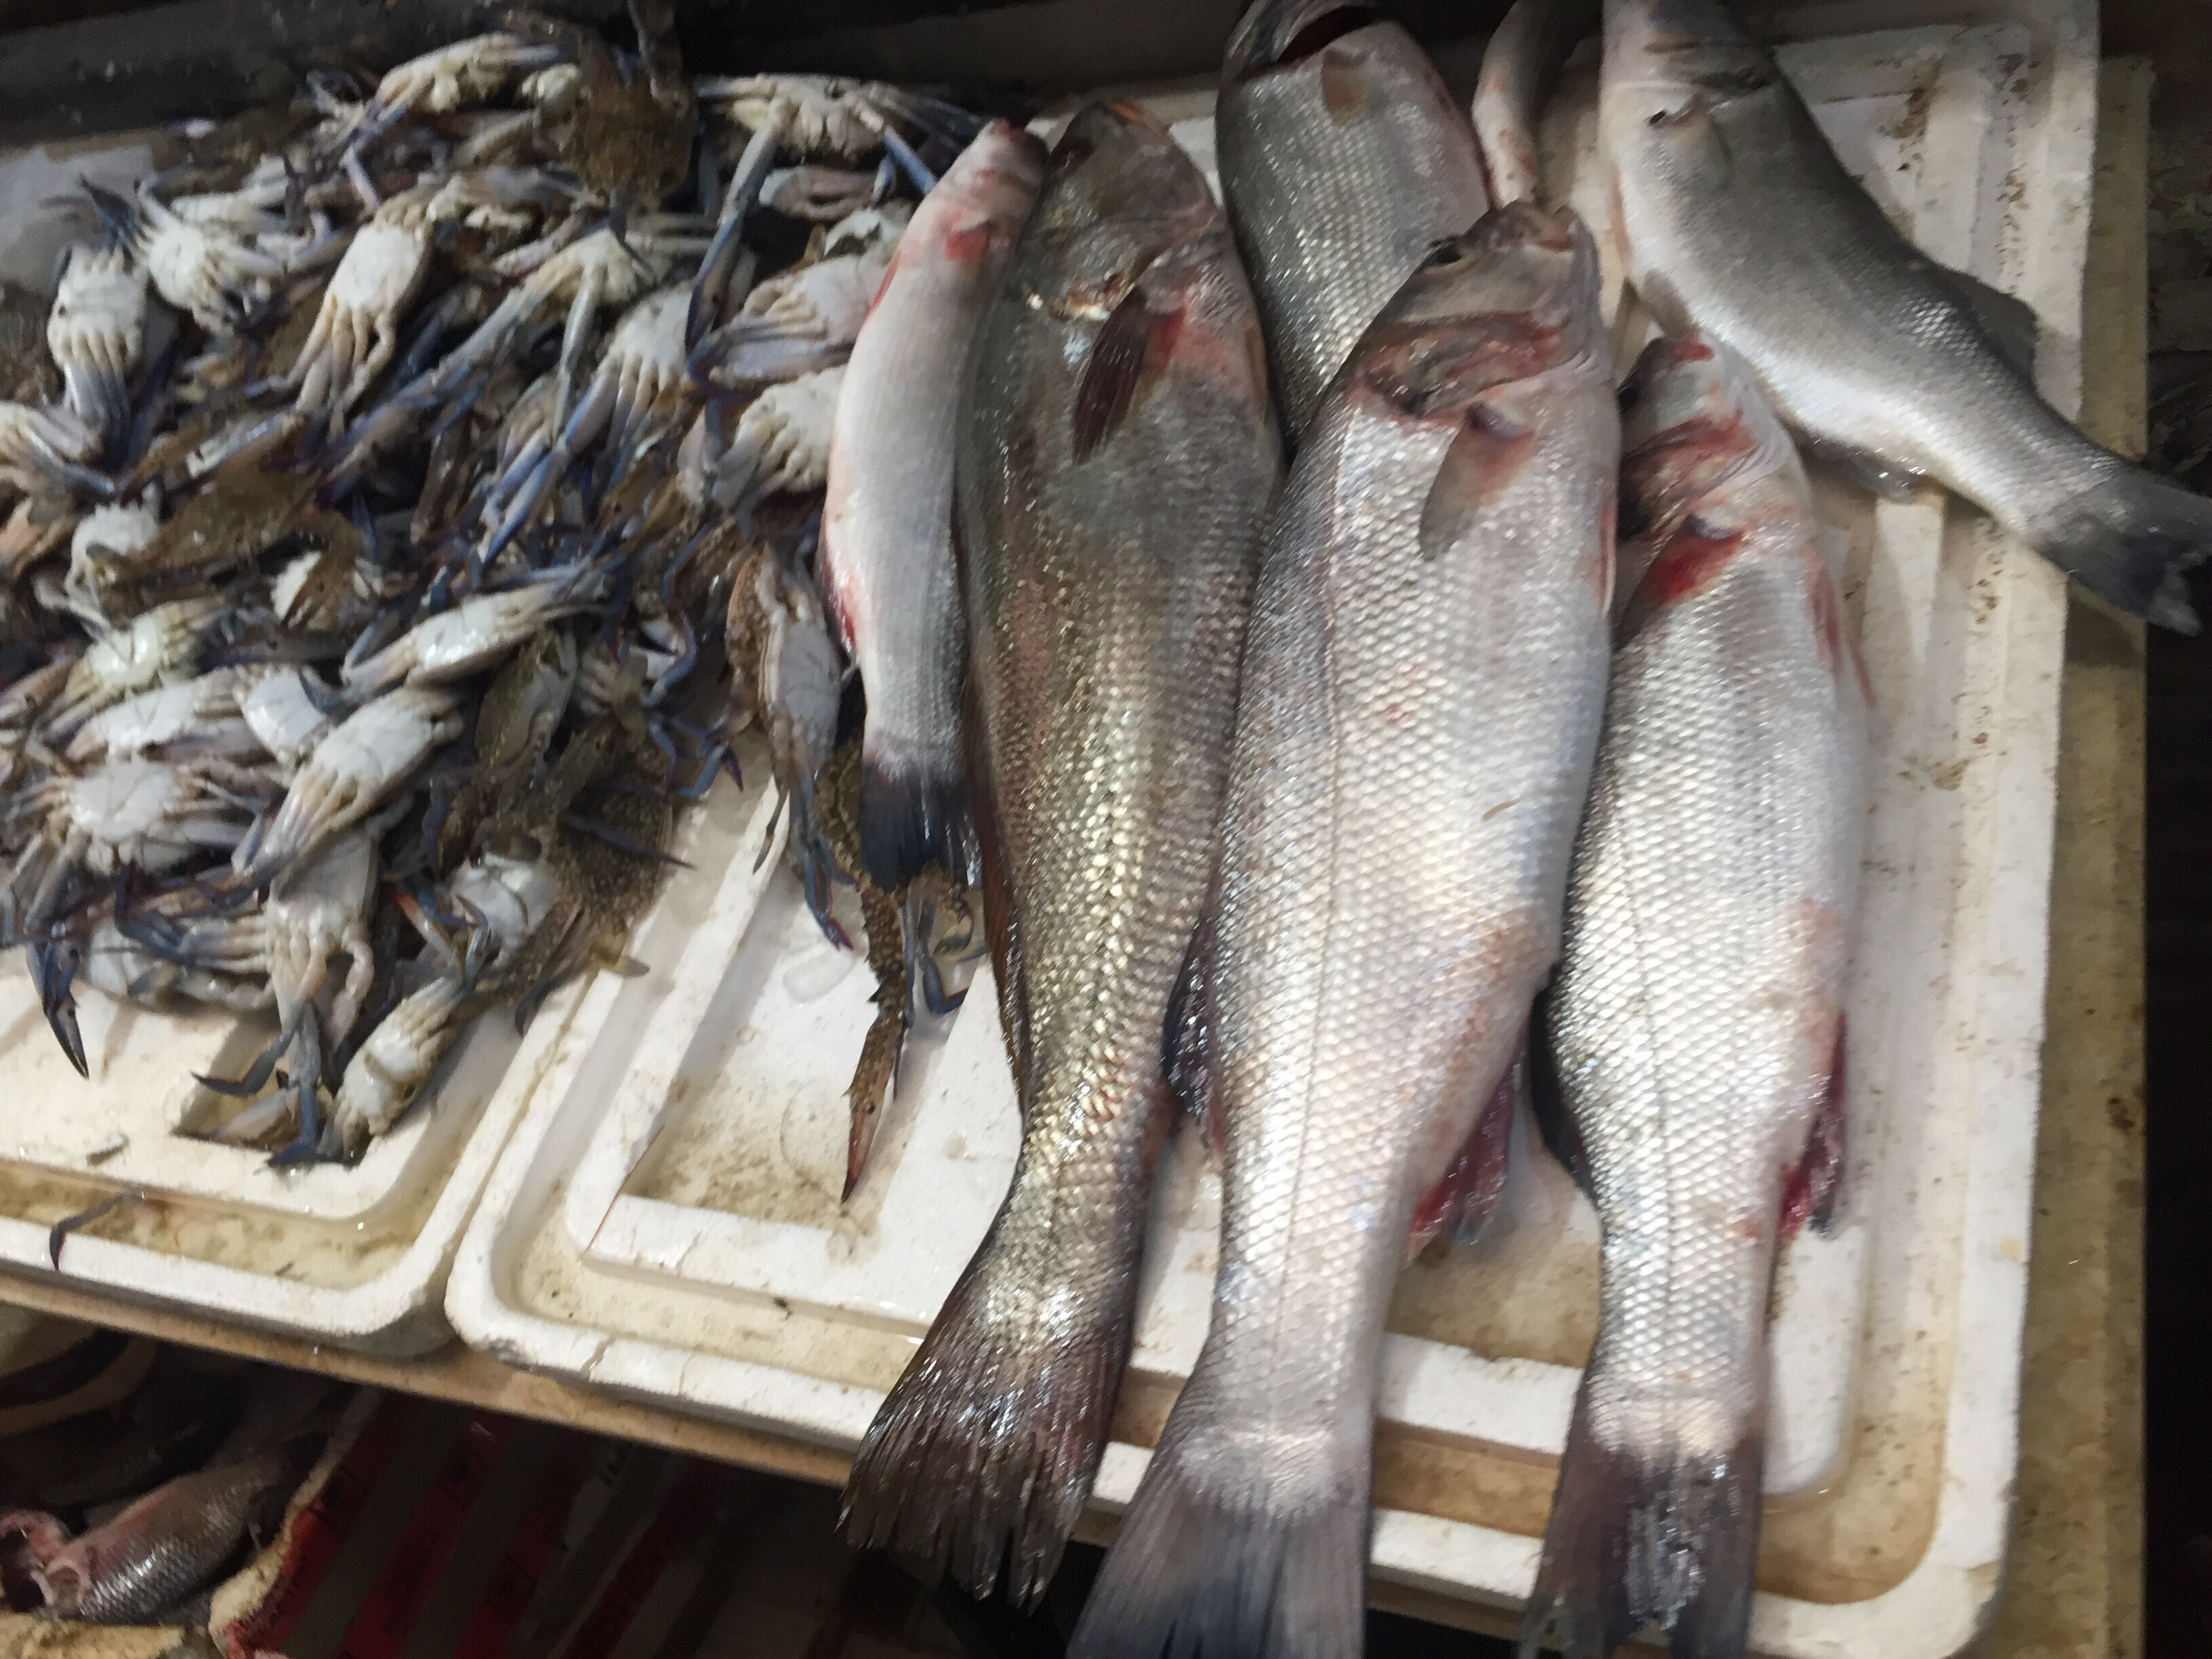  سوق الأسماك في الإسماعيلية (4)